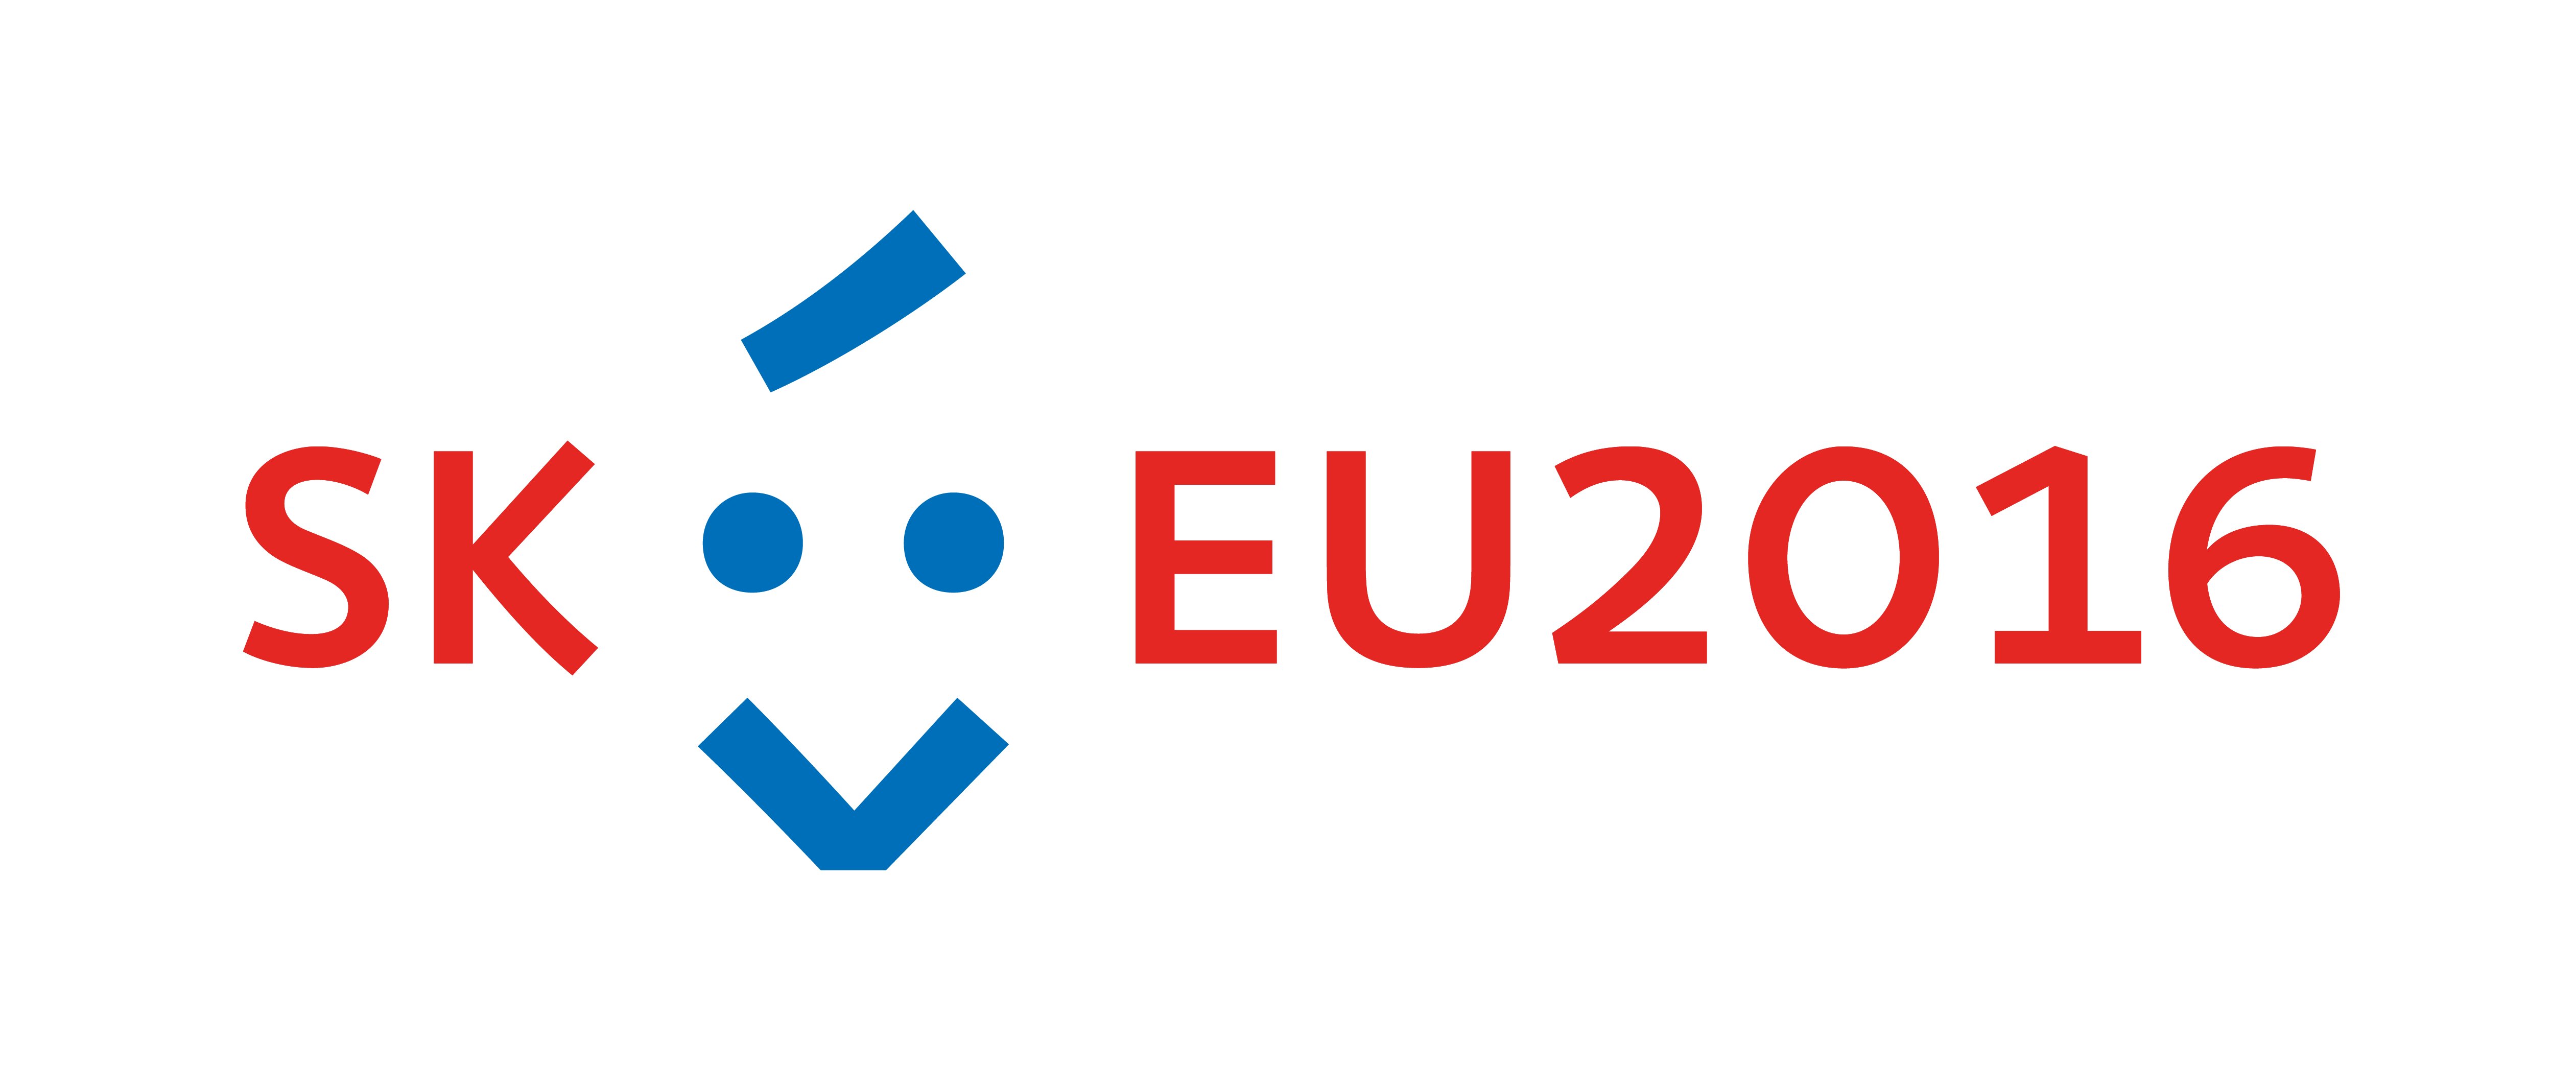 Priority slovenského predsedníctva v Rade EÚ pre vzdelávanie, mládež, kultúru a šport